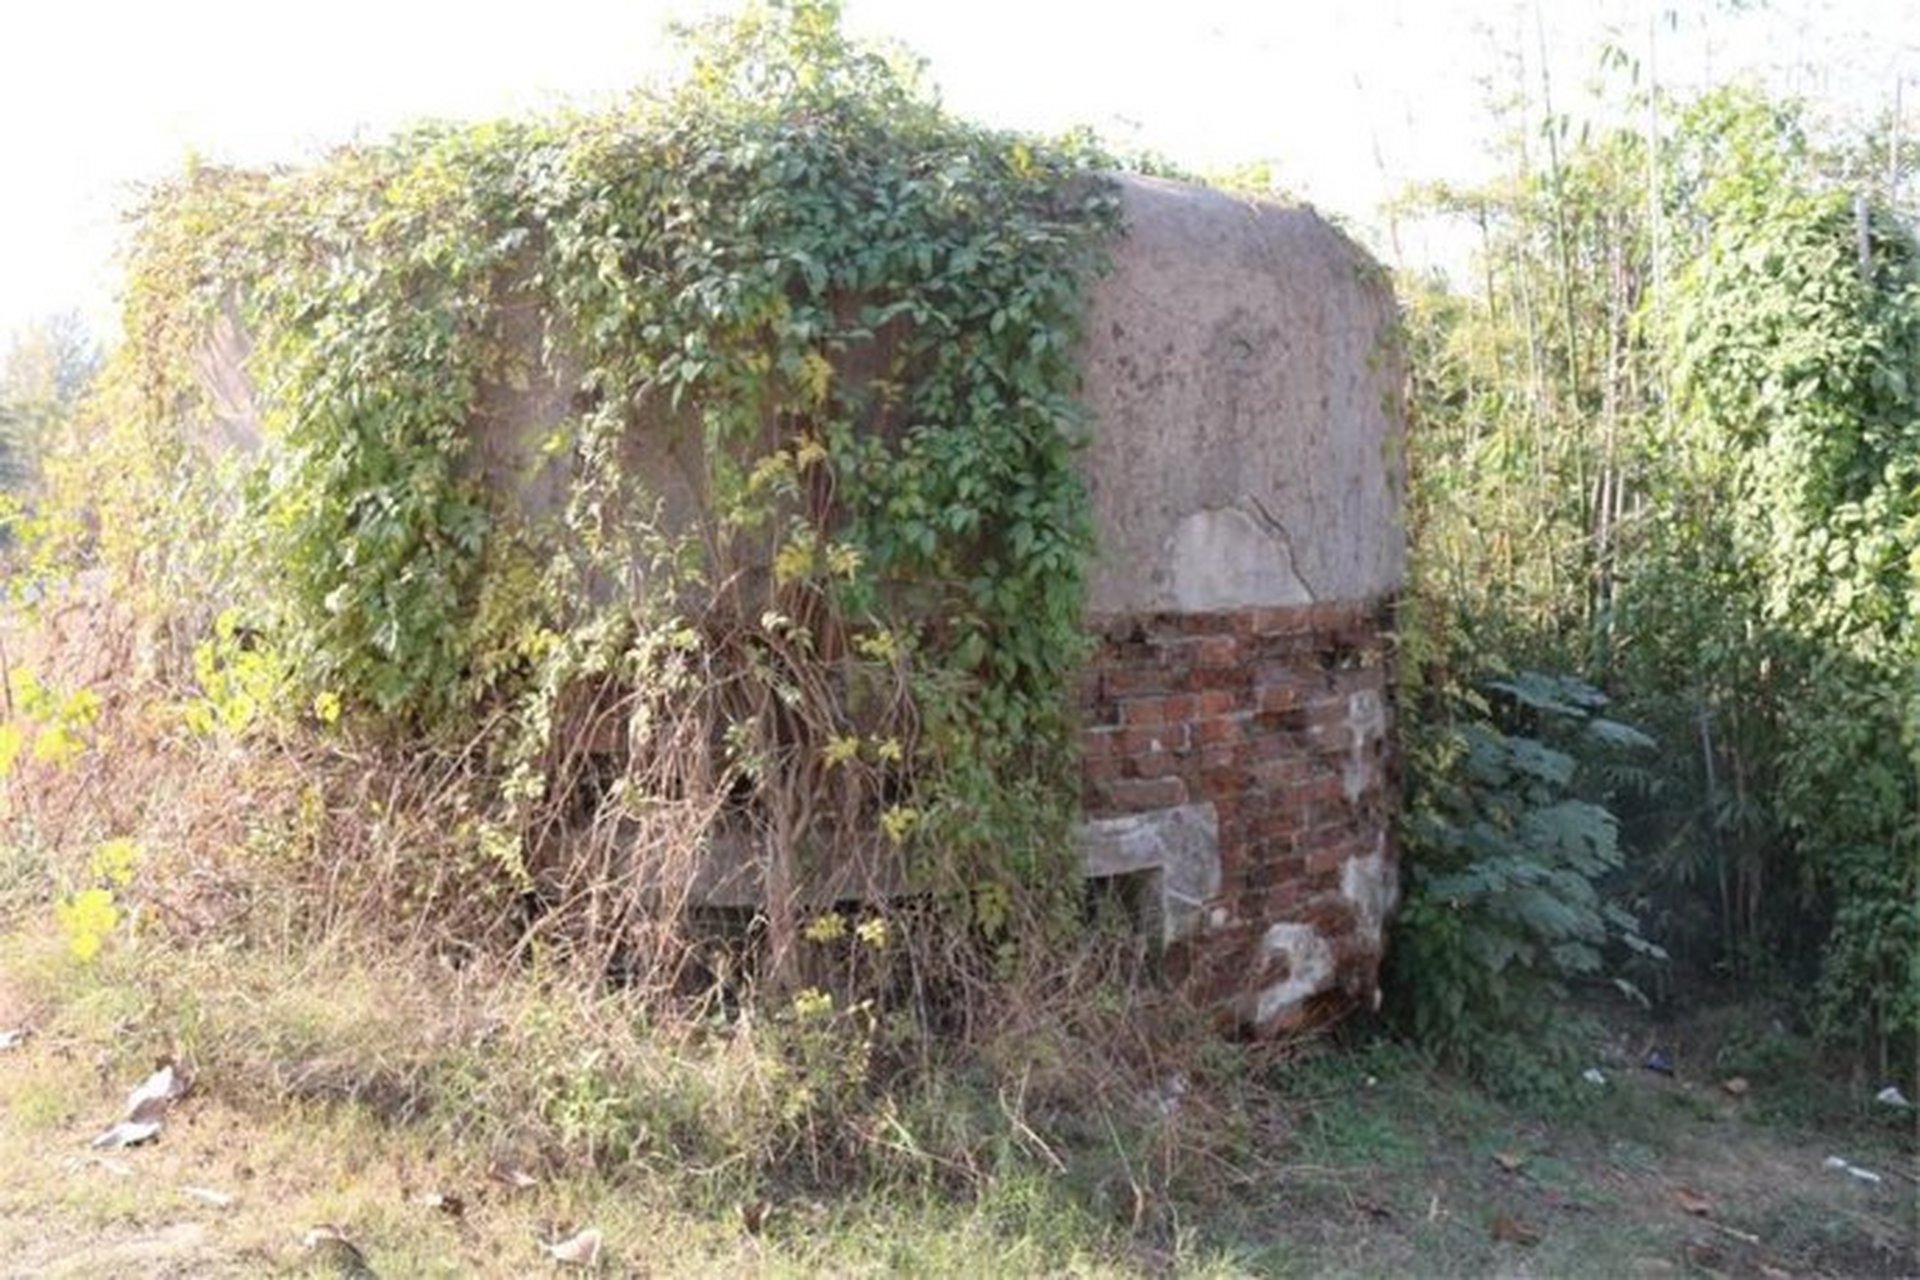 作为汉口最后防线,岱家山张公堤碉堡群在武汉沦陷前夕,起到了为后方